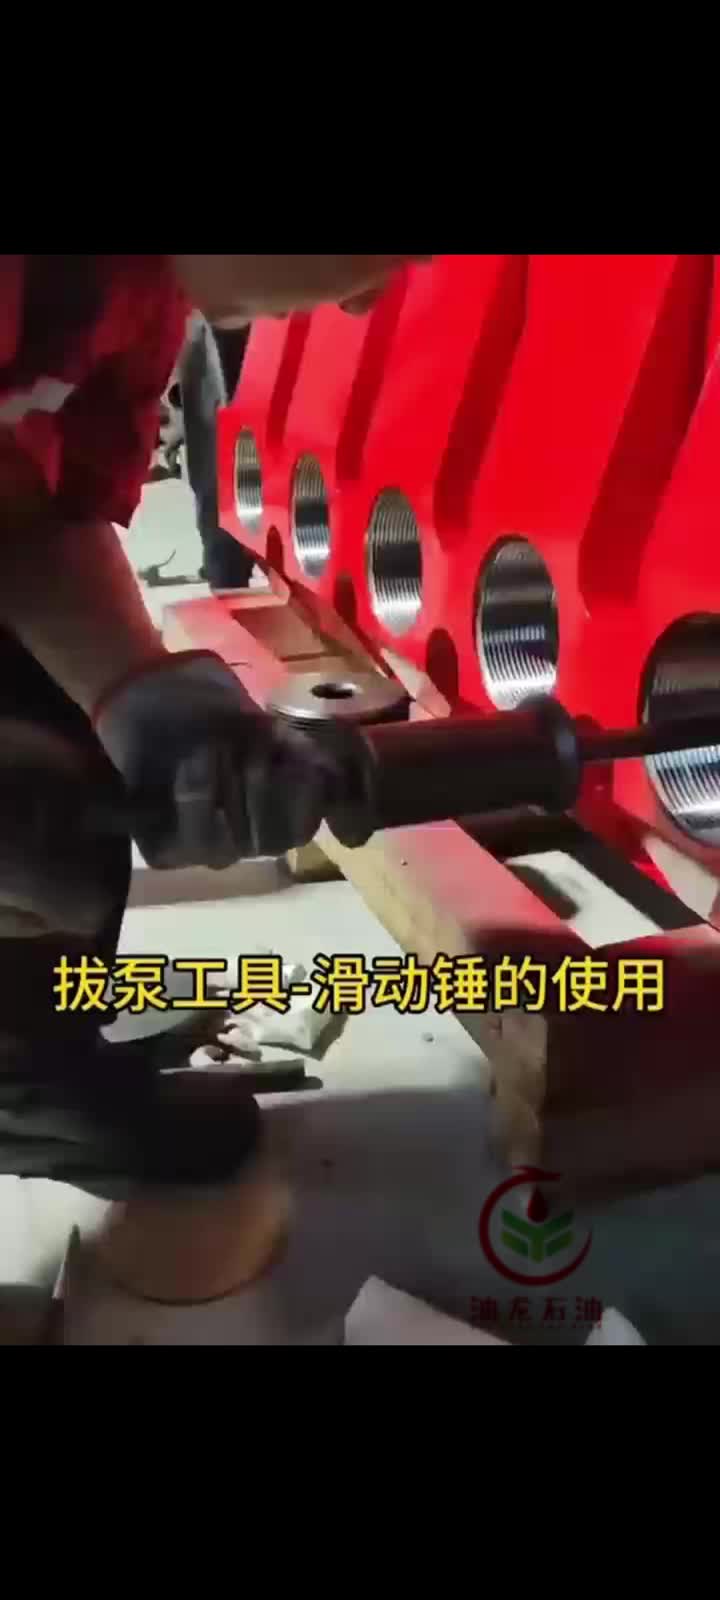 Pump pulling tool - sliding hammer